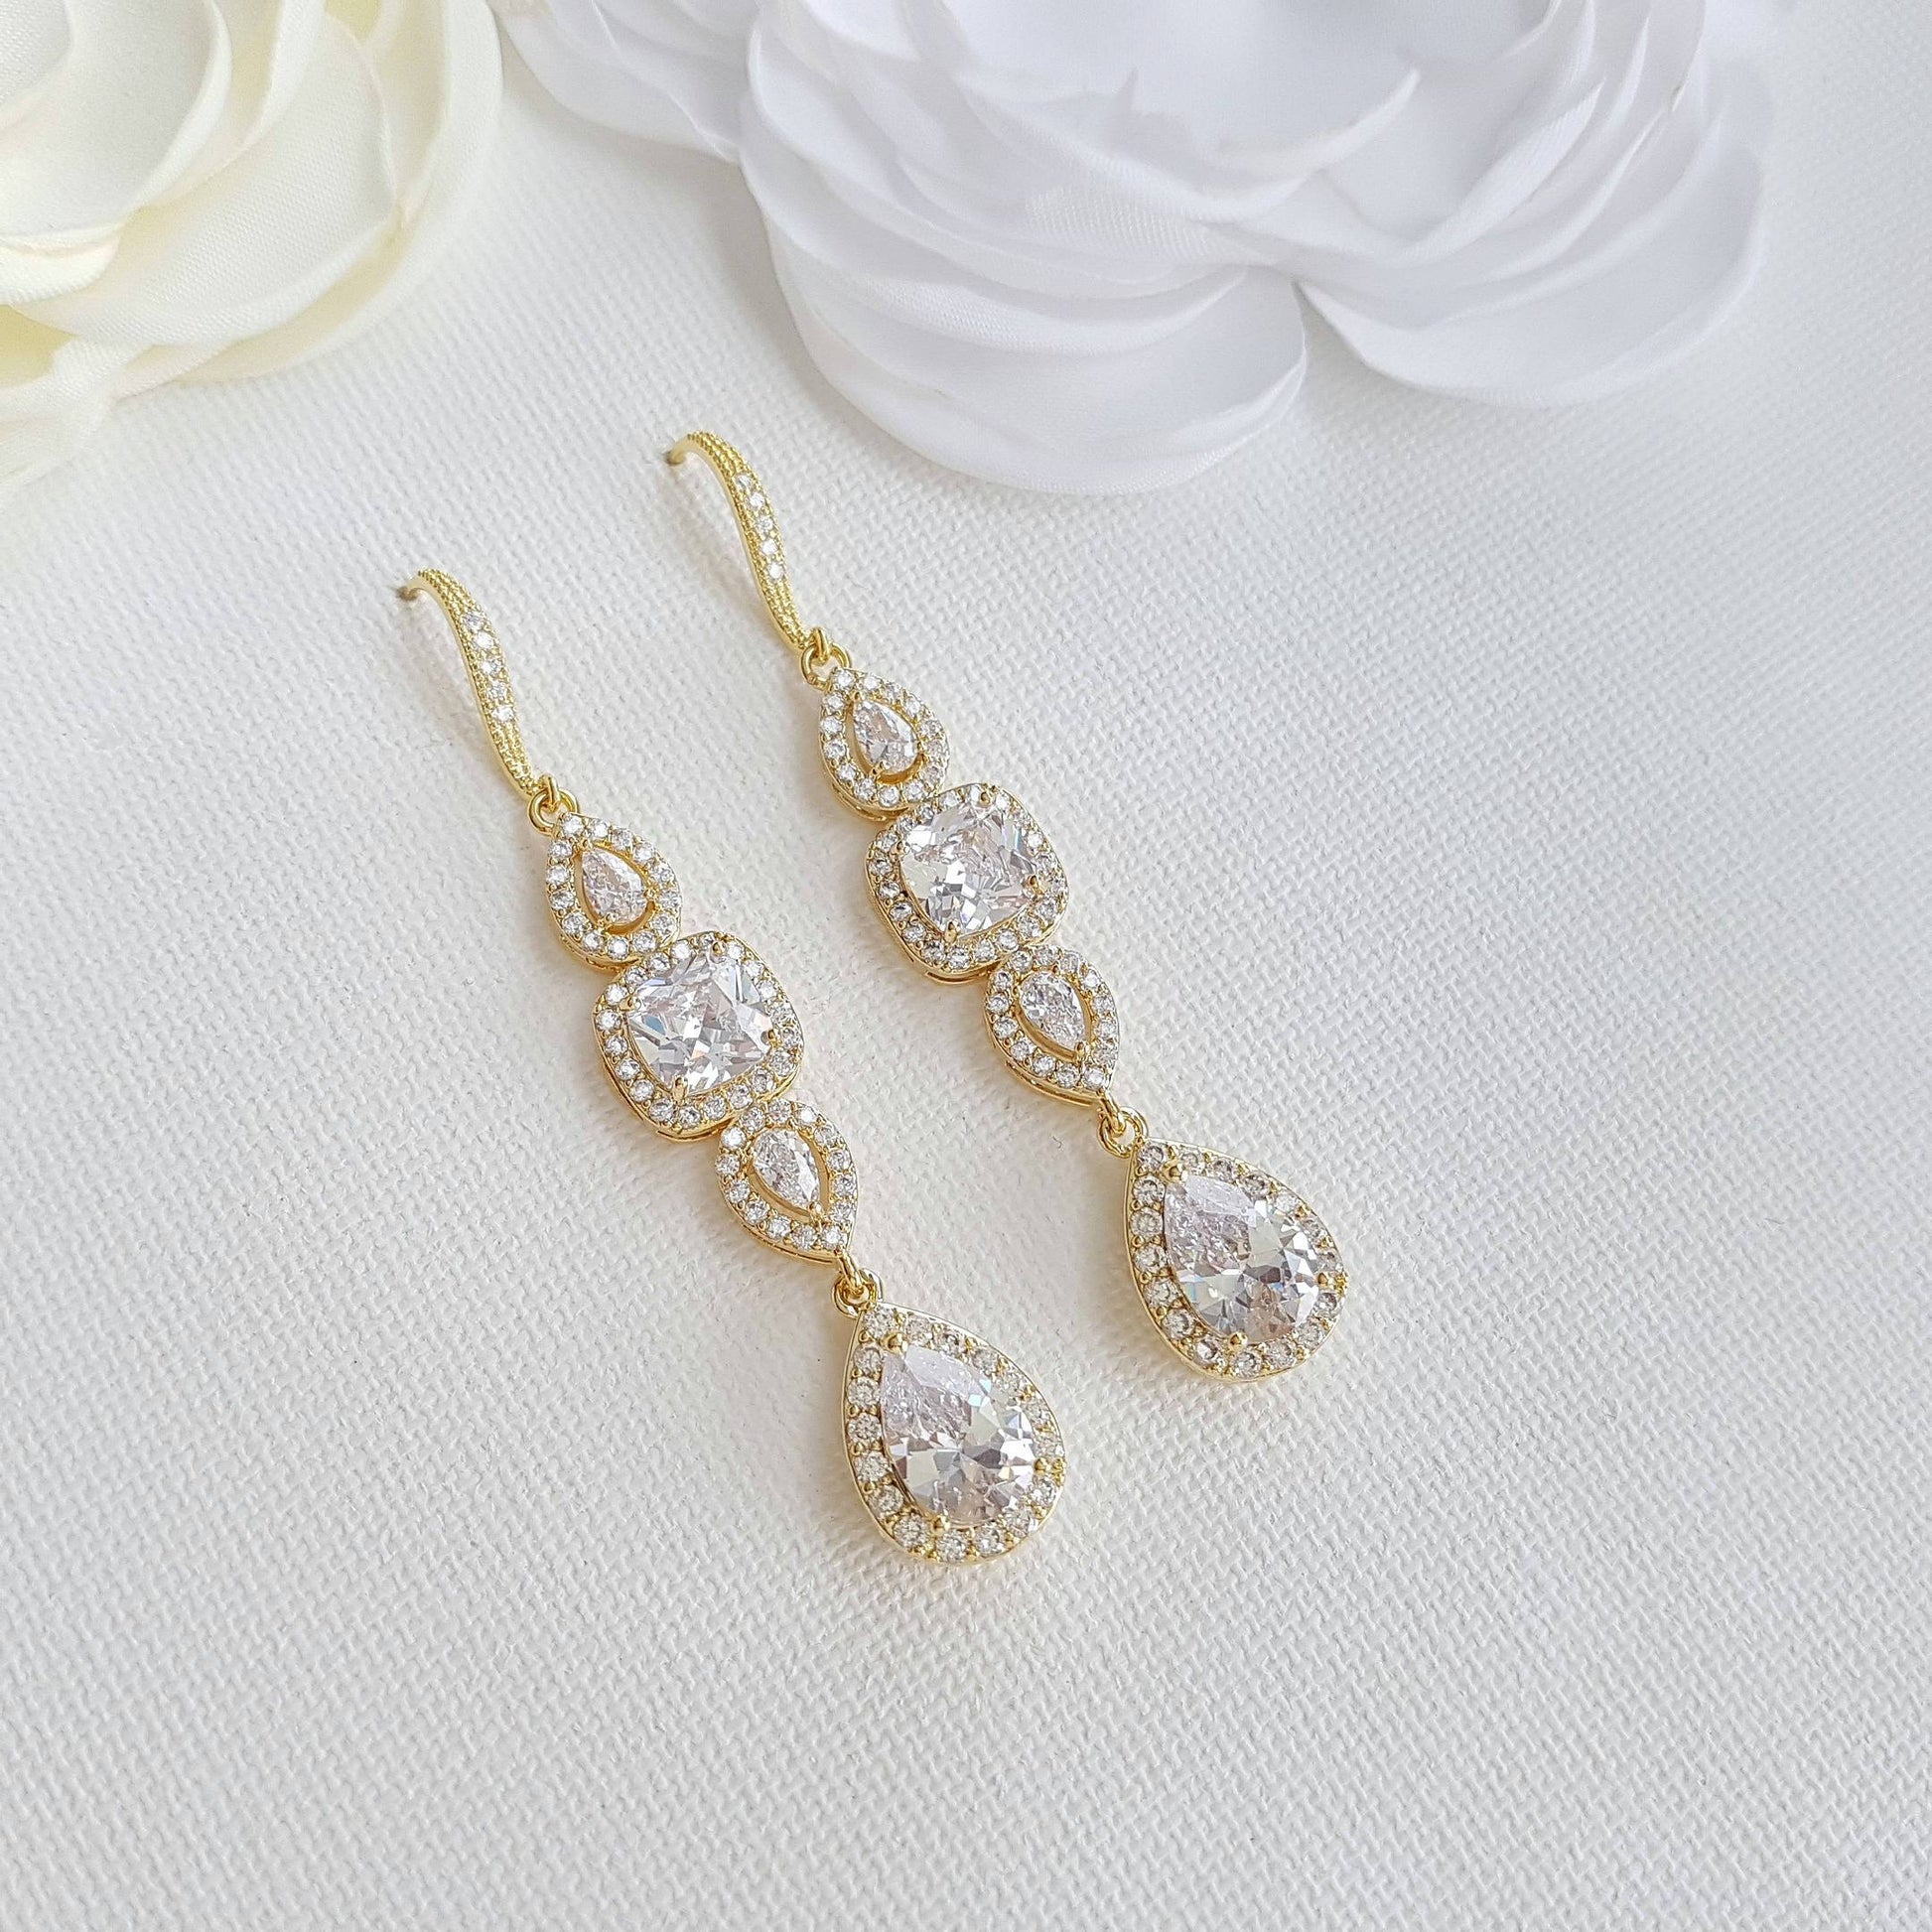 Gold Drop Earrings Weddings- Gianna - PoetryDesigns